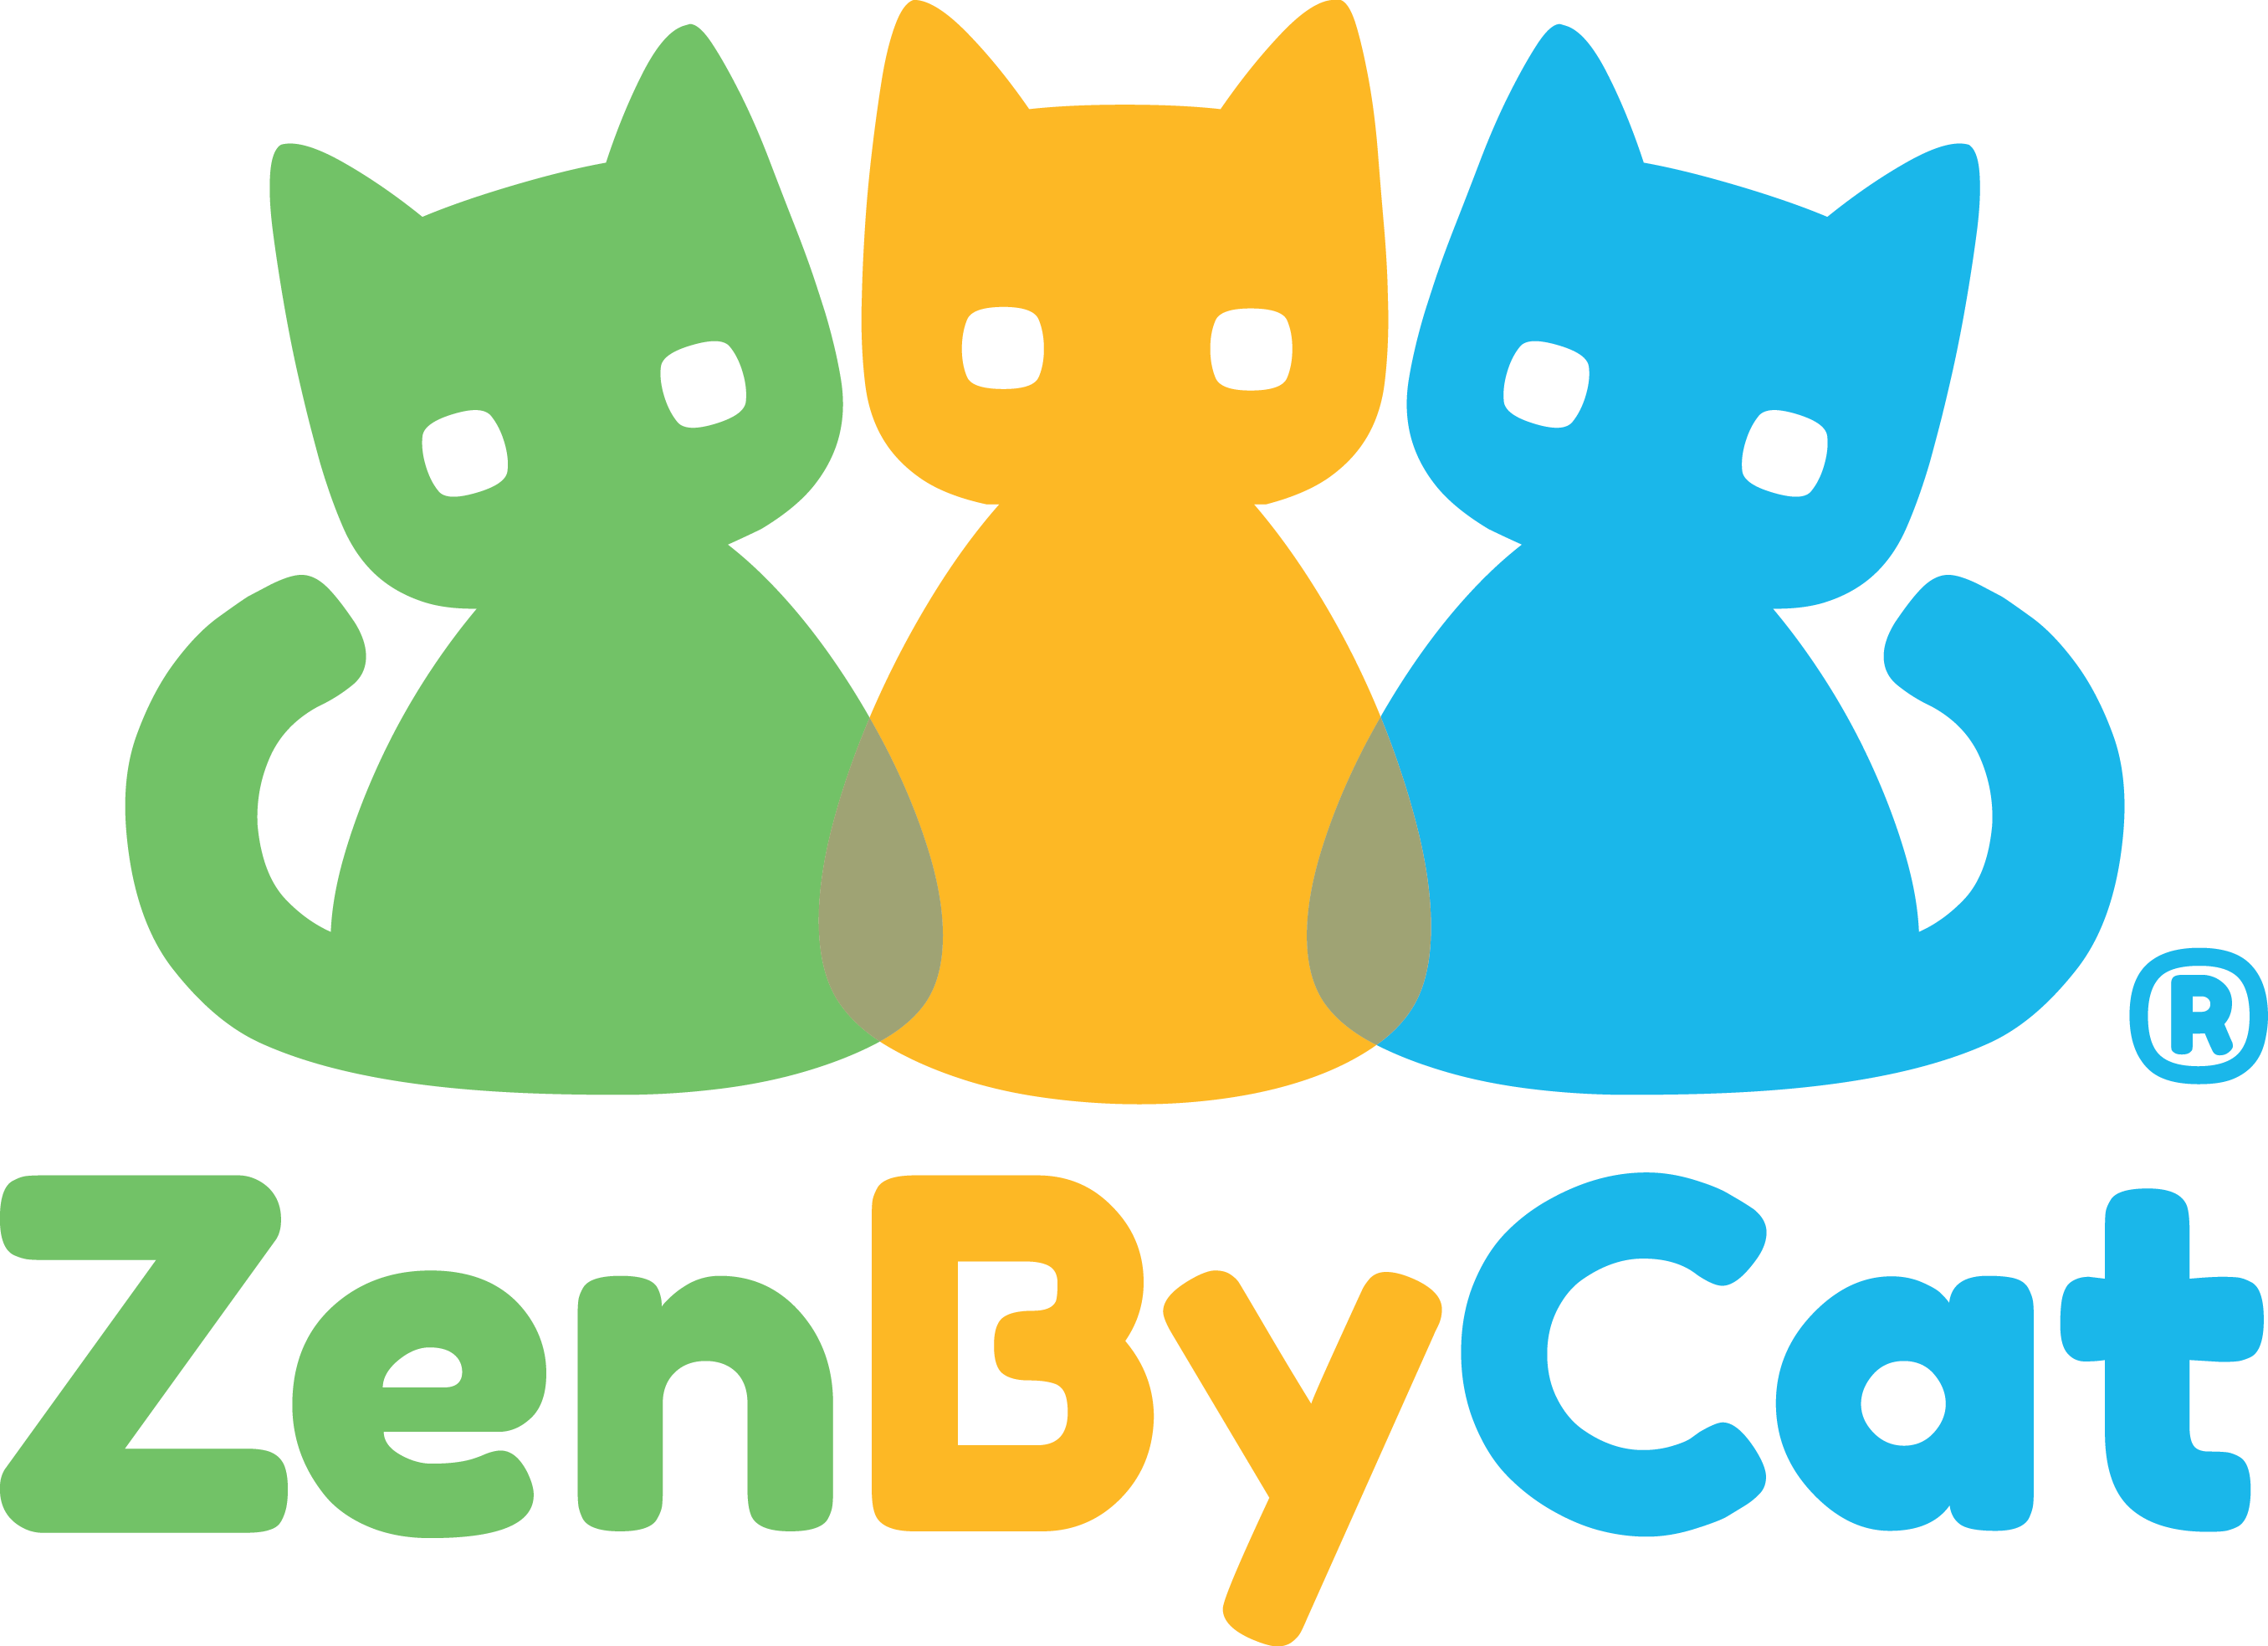 ZenByCat logo